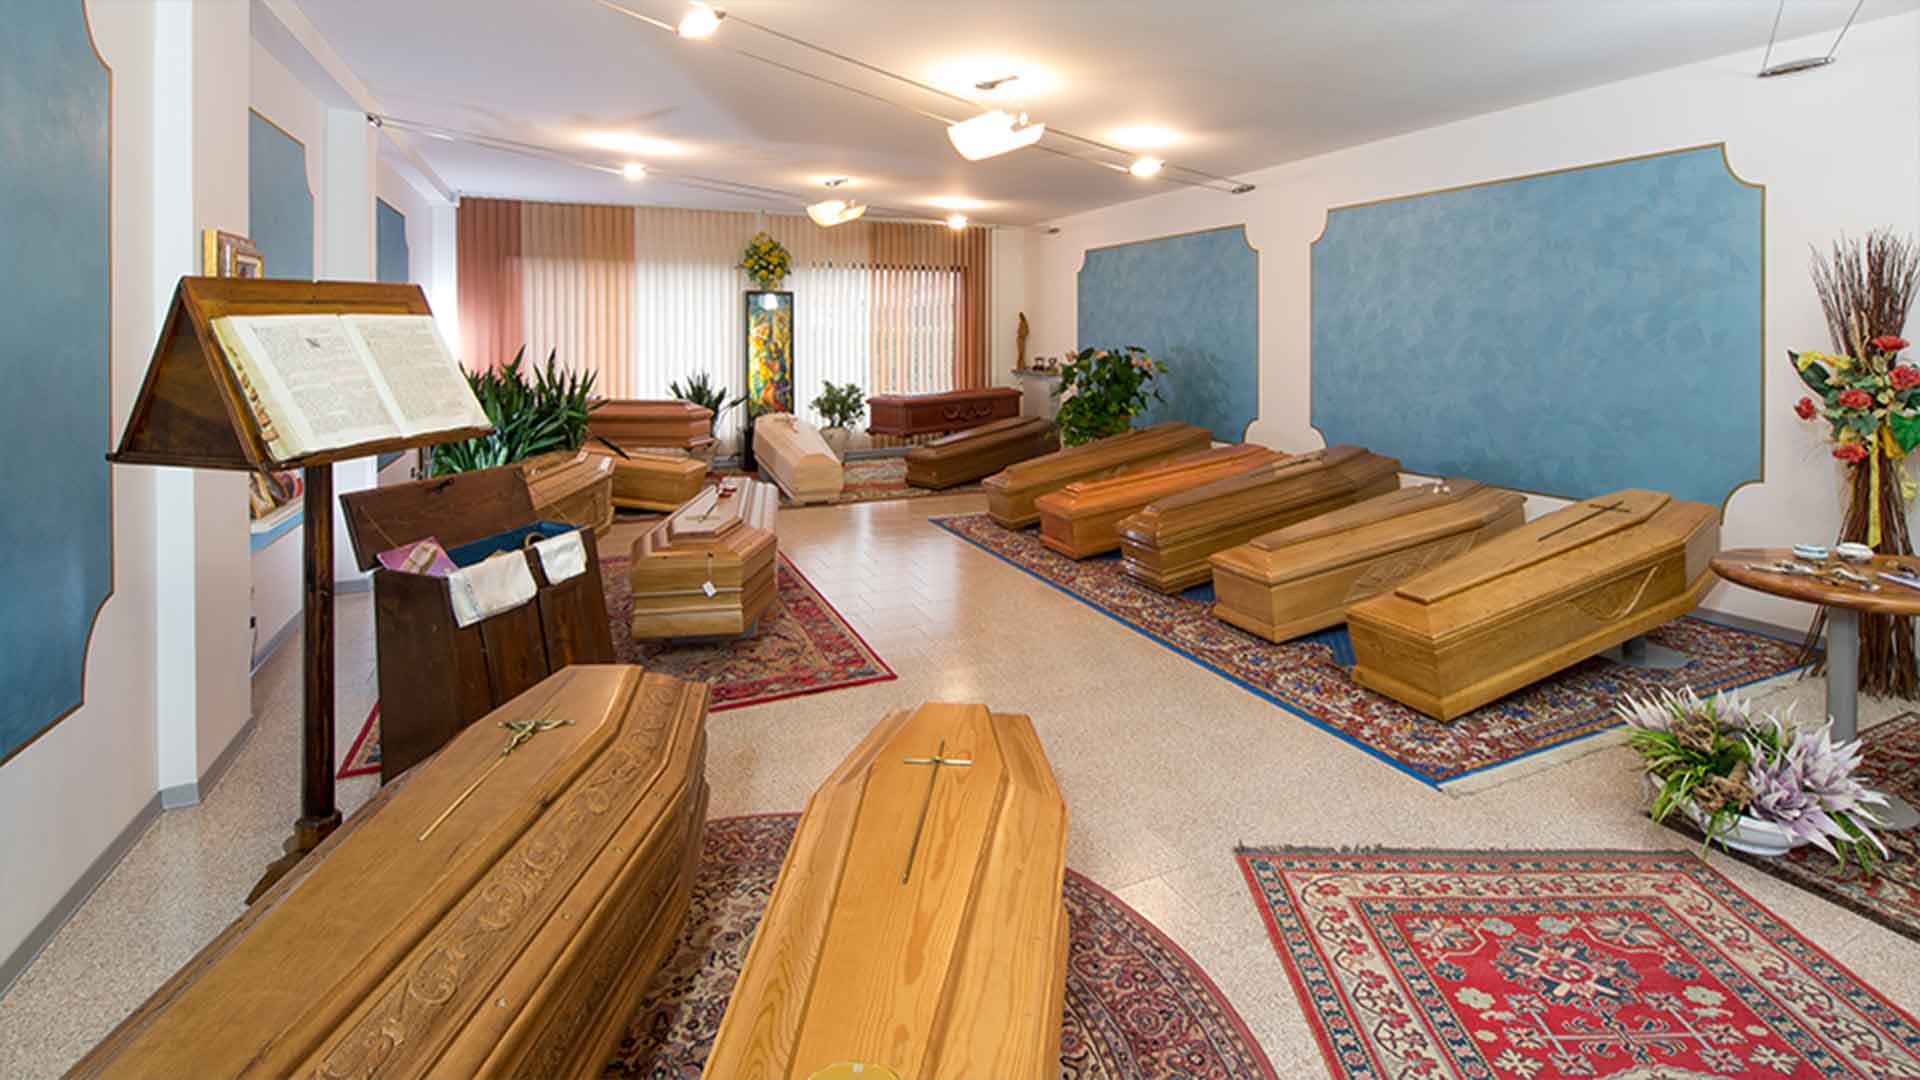 Foto dello showroom interno con vasta scelta di sarcofaghi